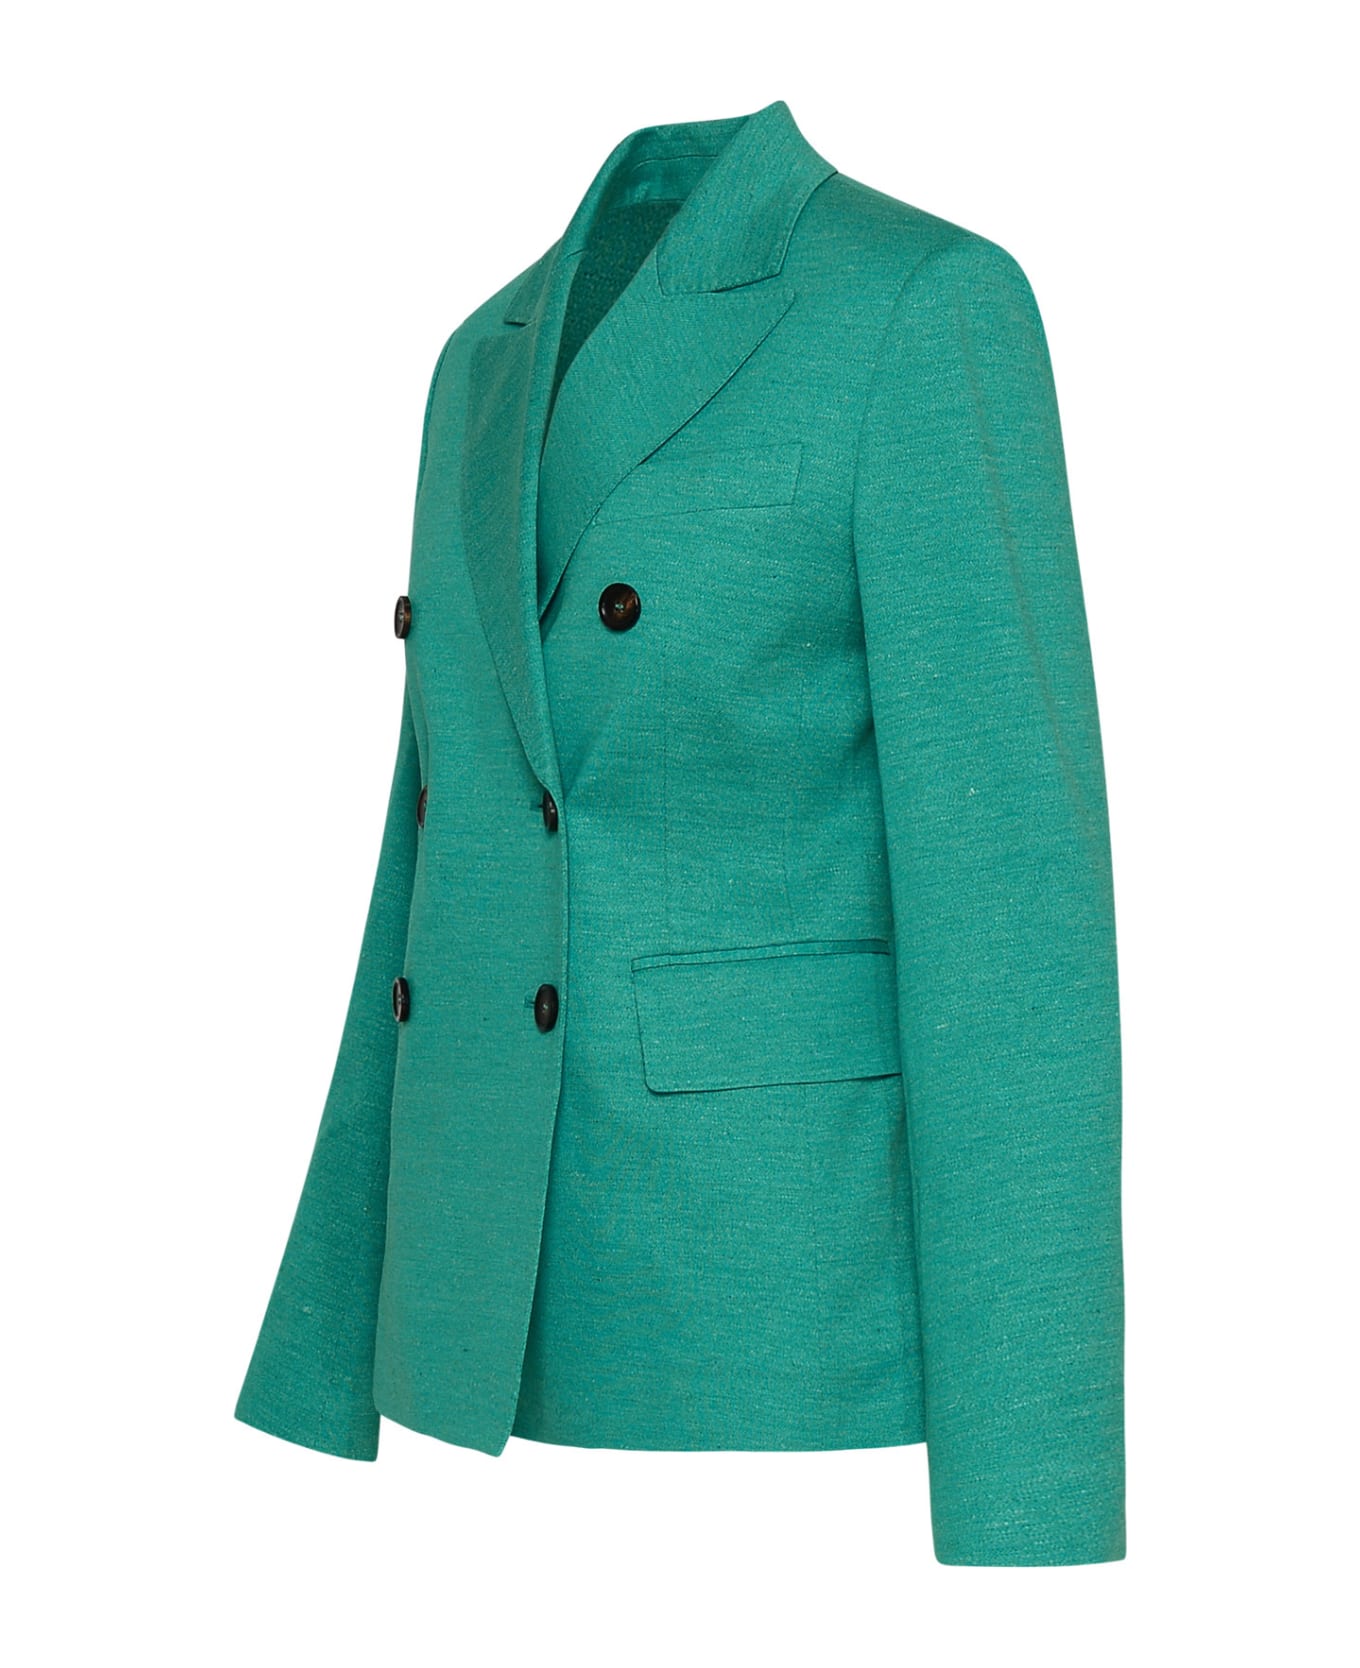 Max Mara Cashmere Green Cotton Blend Zirlo Blazer Jacket - 003